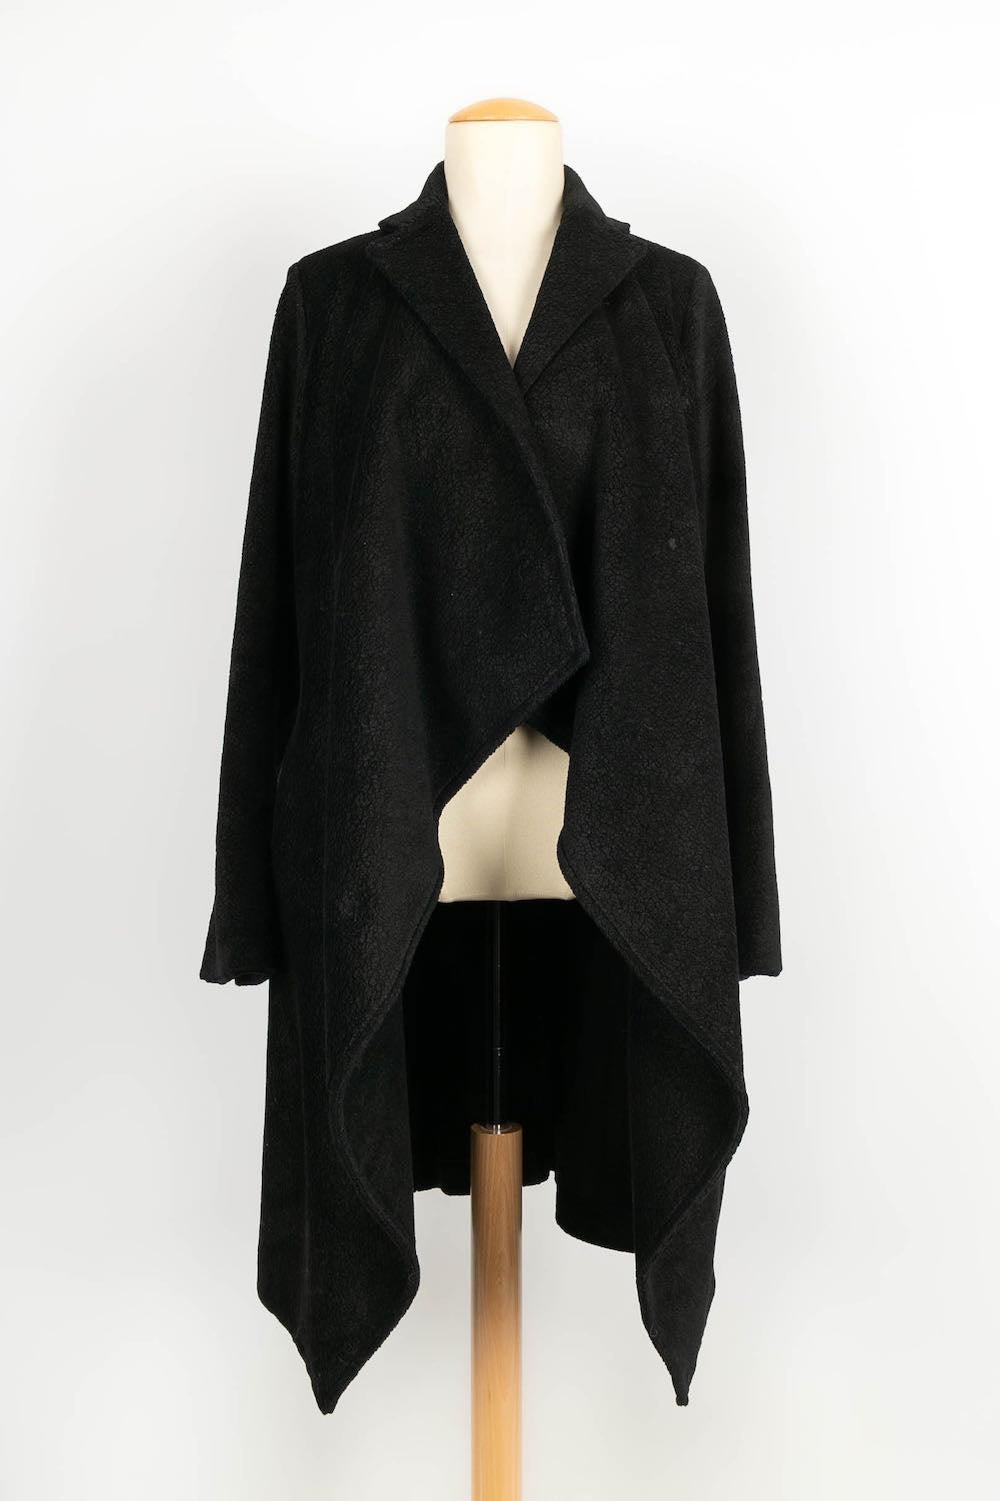 Peachoo + Krejberg - (Made in Italy) Manteau noir en coton avec finition en fourrure. Taille S.

Informations complémentaires :
Condit : Très bon état.
Dimensions : Largeur des épaules : 42 cm - Longueur des manches : 62 cm - Longueur : 110